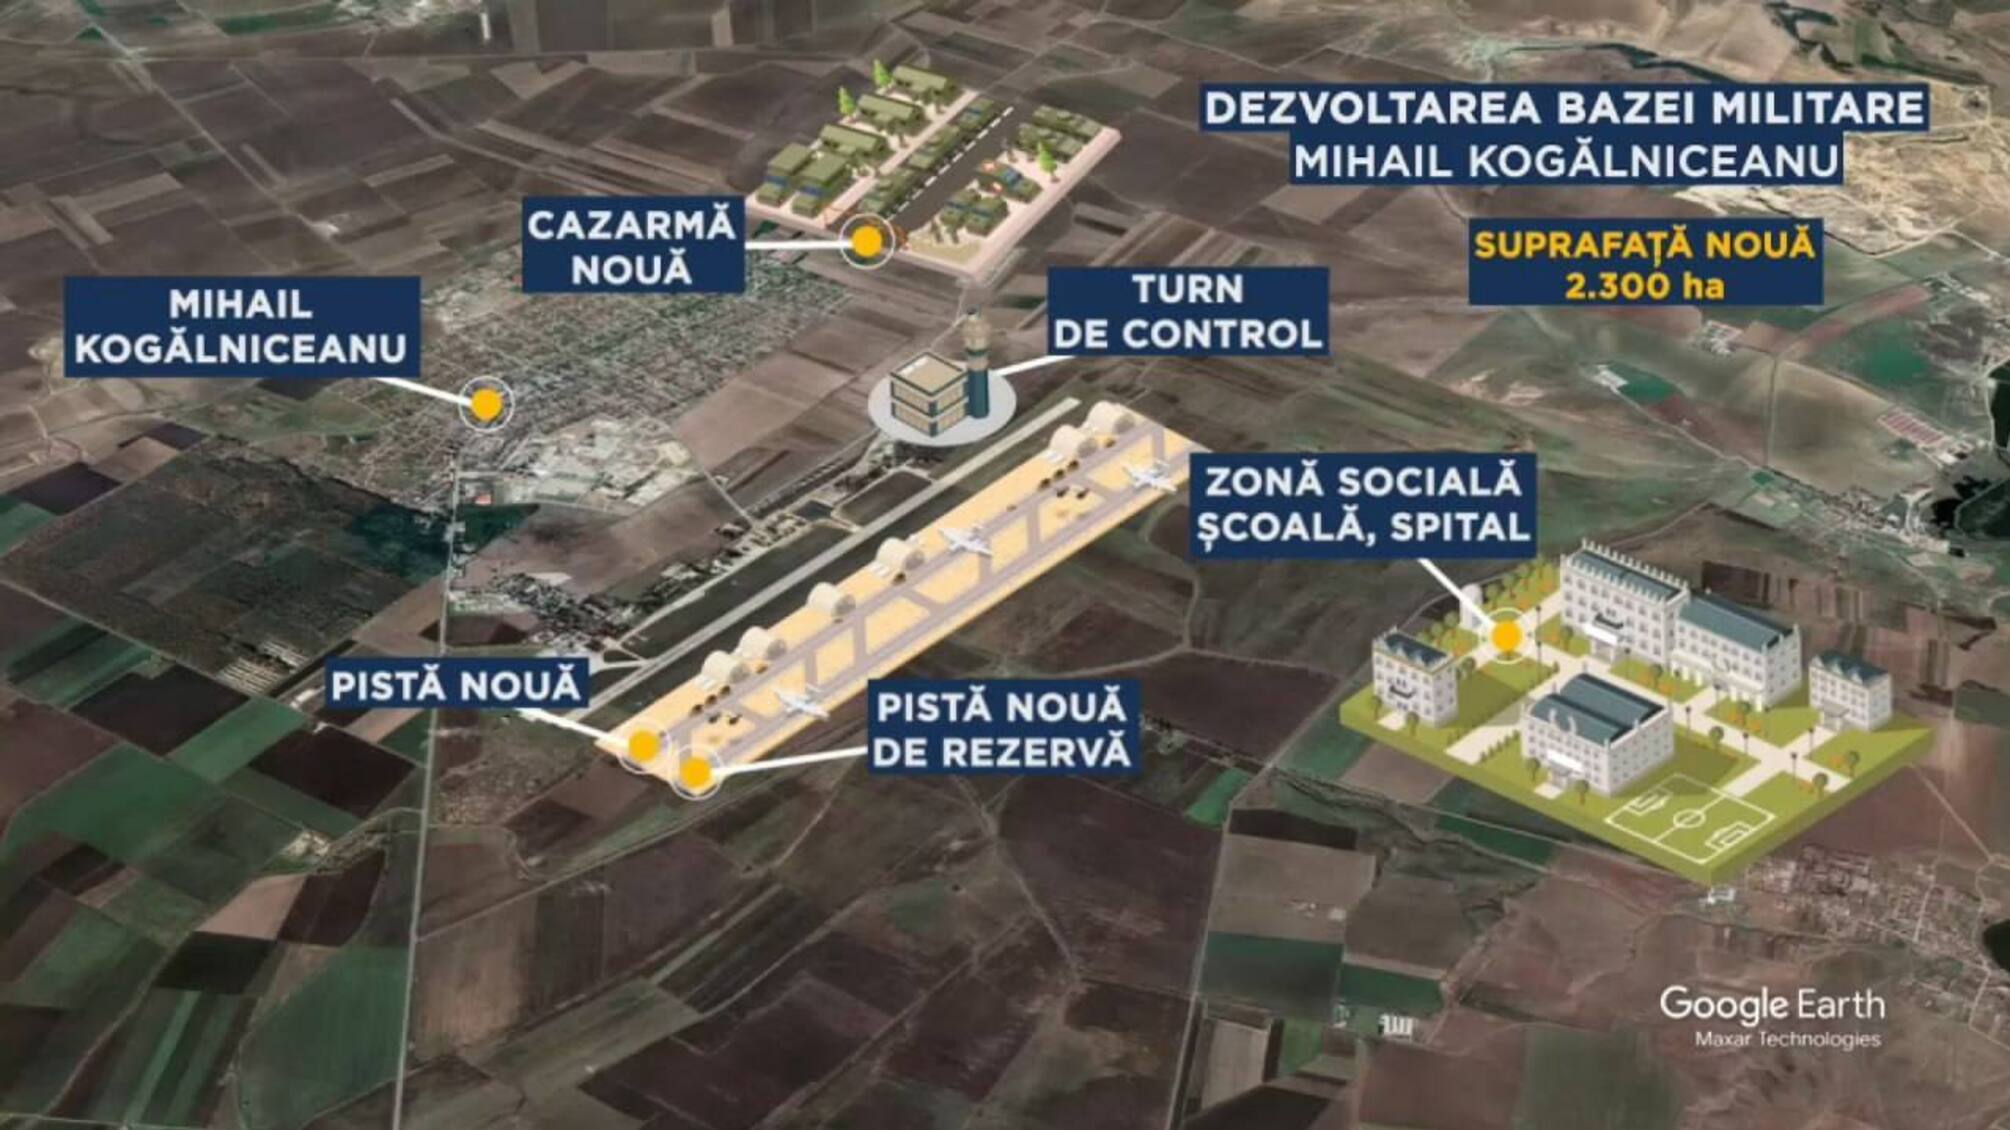 В Румынии начали строить крупнейшую в Европе базу НАТО, - СМИ